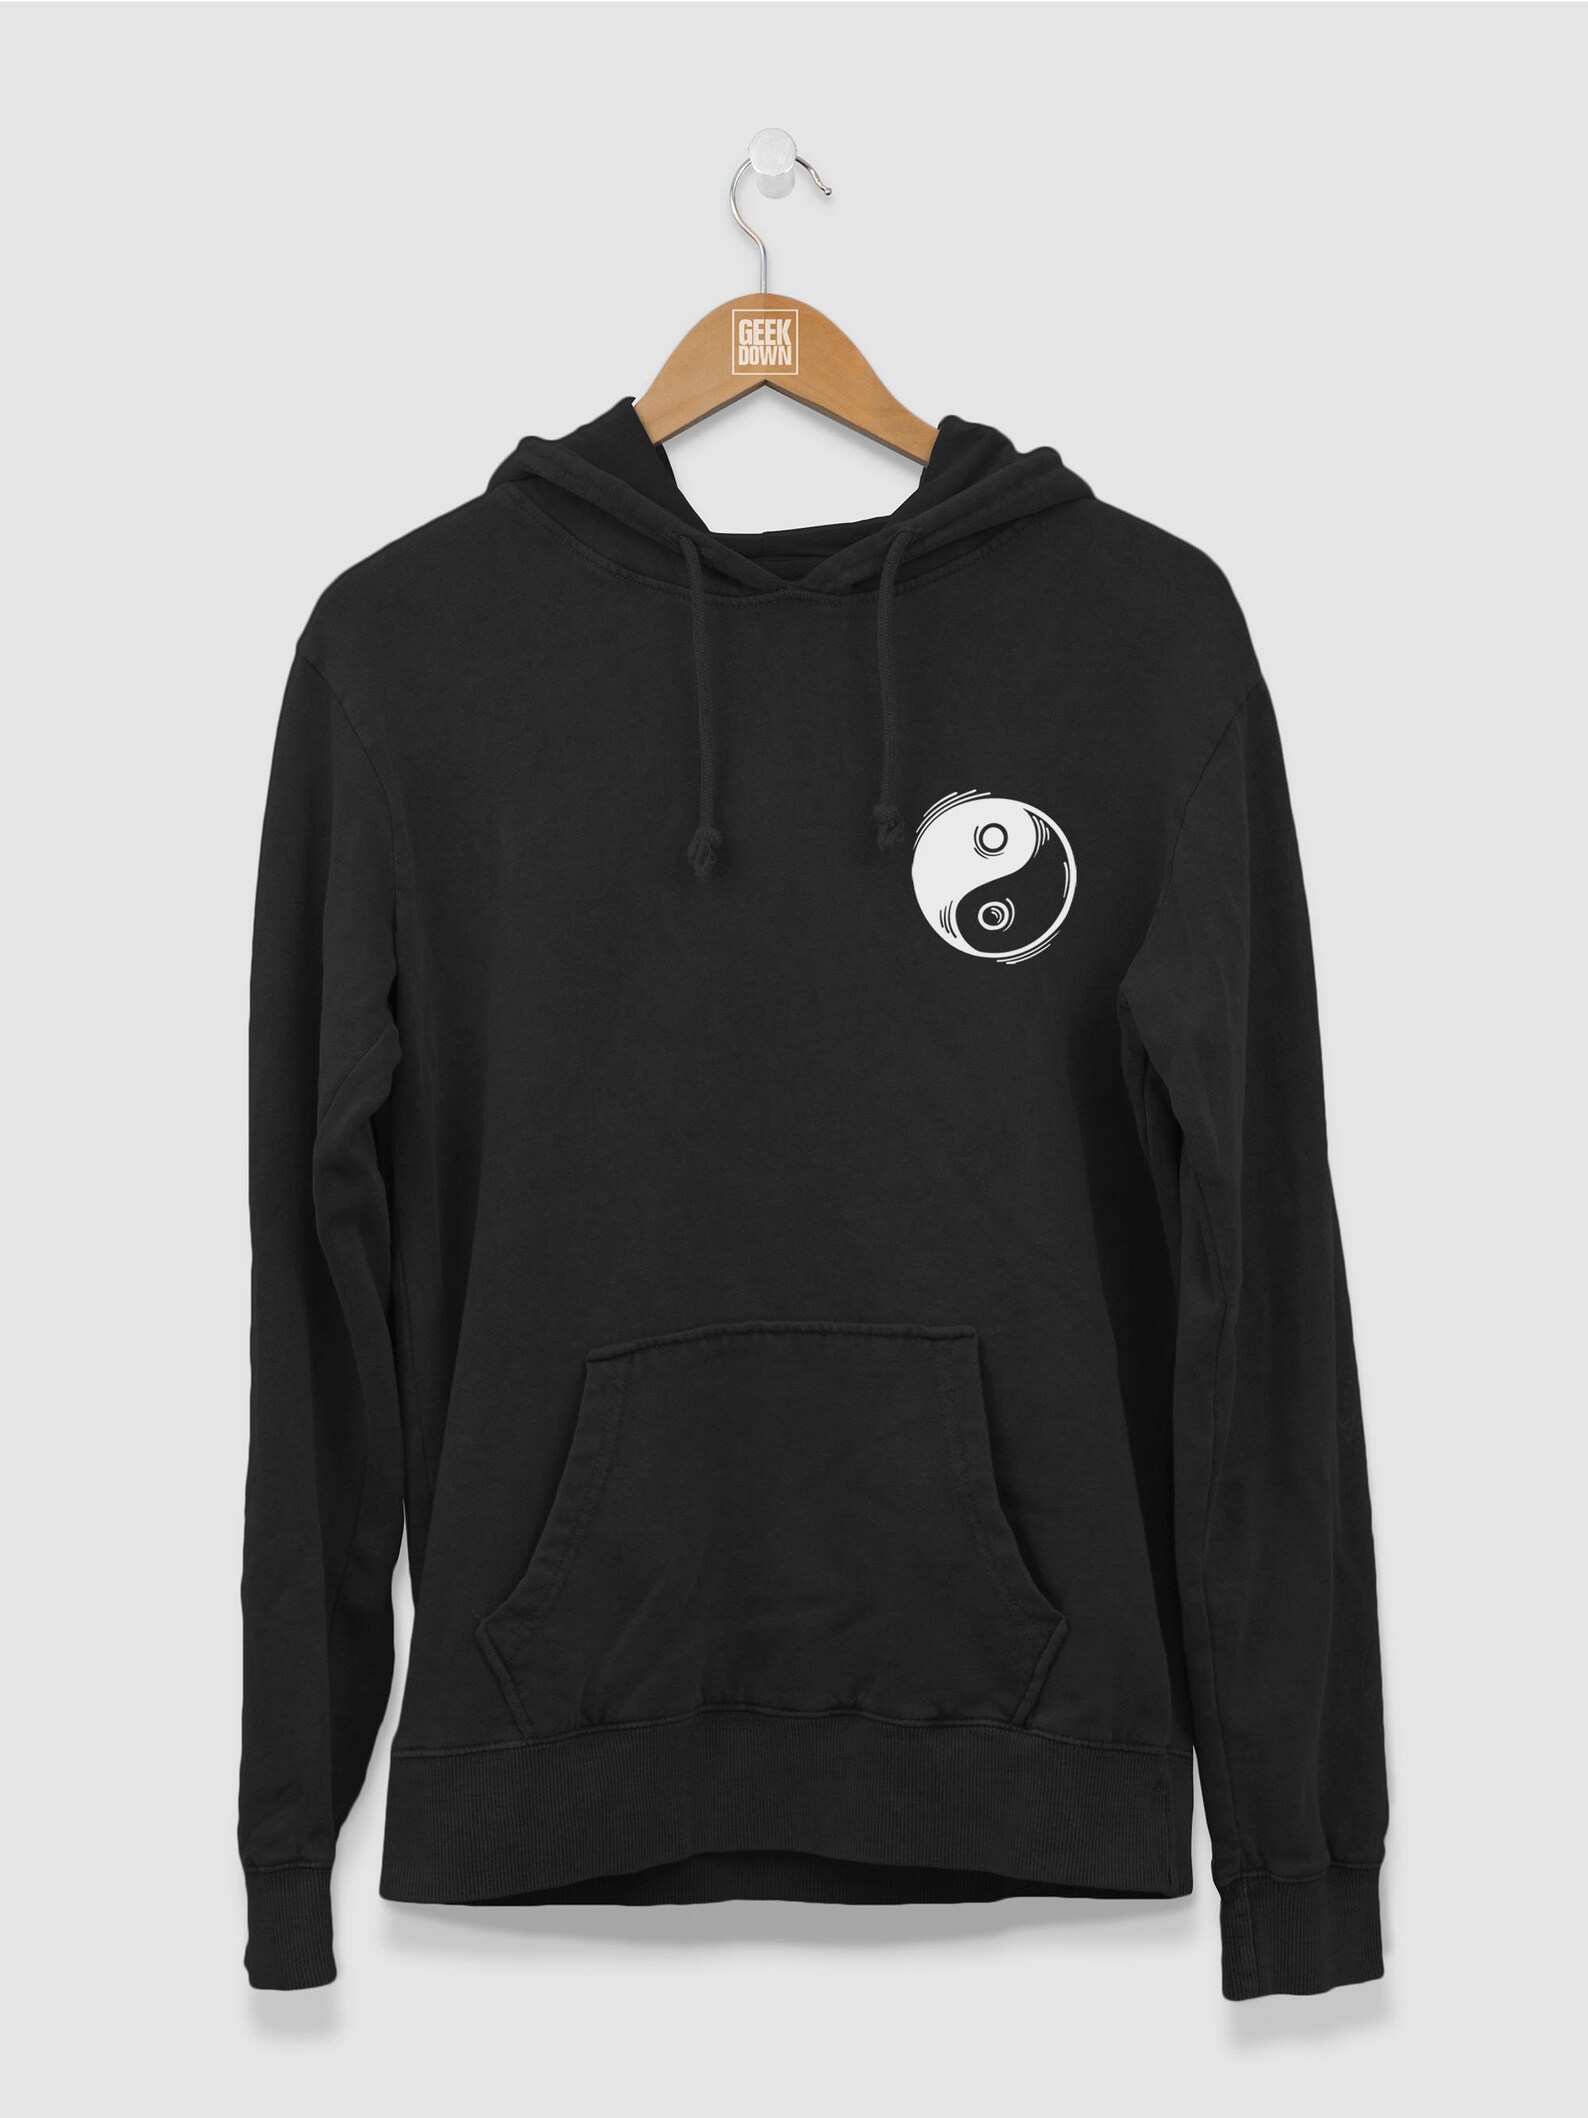 Yin Yang hoodie hoodies / Women Jumper / Dualism Hoodie / | Etsy